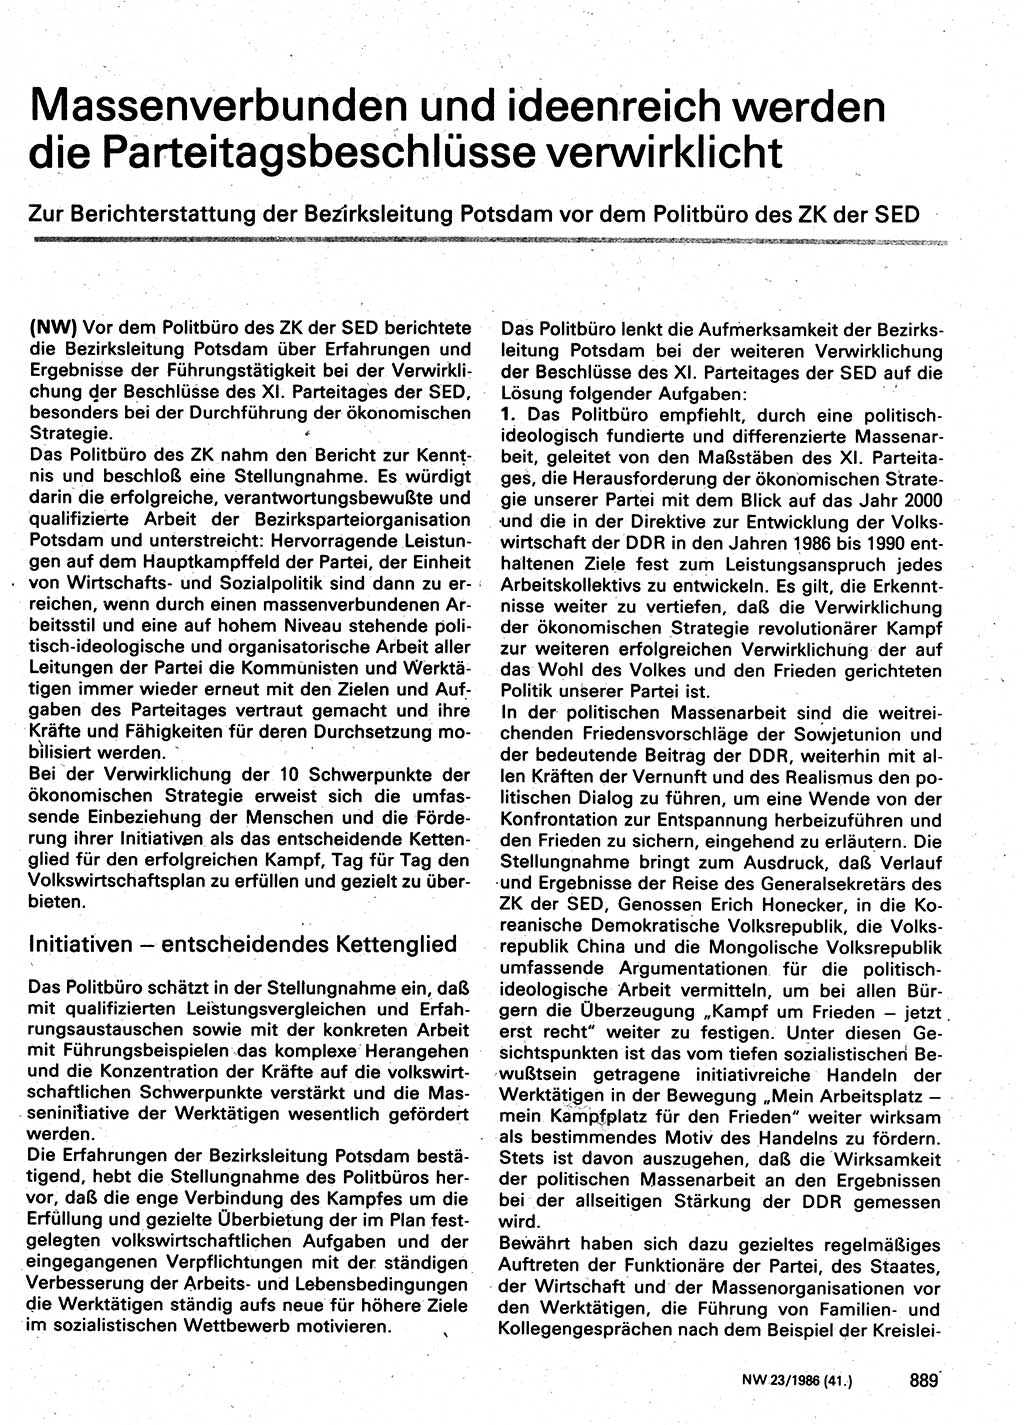 Neuer Weg (NW), Organ des Zentralkomitees (ZK) der SED (Sozialistische Einheitspartei Deutschlands) für Fragen des Parteilebens, 41. Jahrgang [Deutsche Demokratische Republik (DDR)] 1986, Seite 889 (NW ZK SED DDR 1986, S. 889)